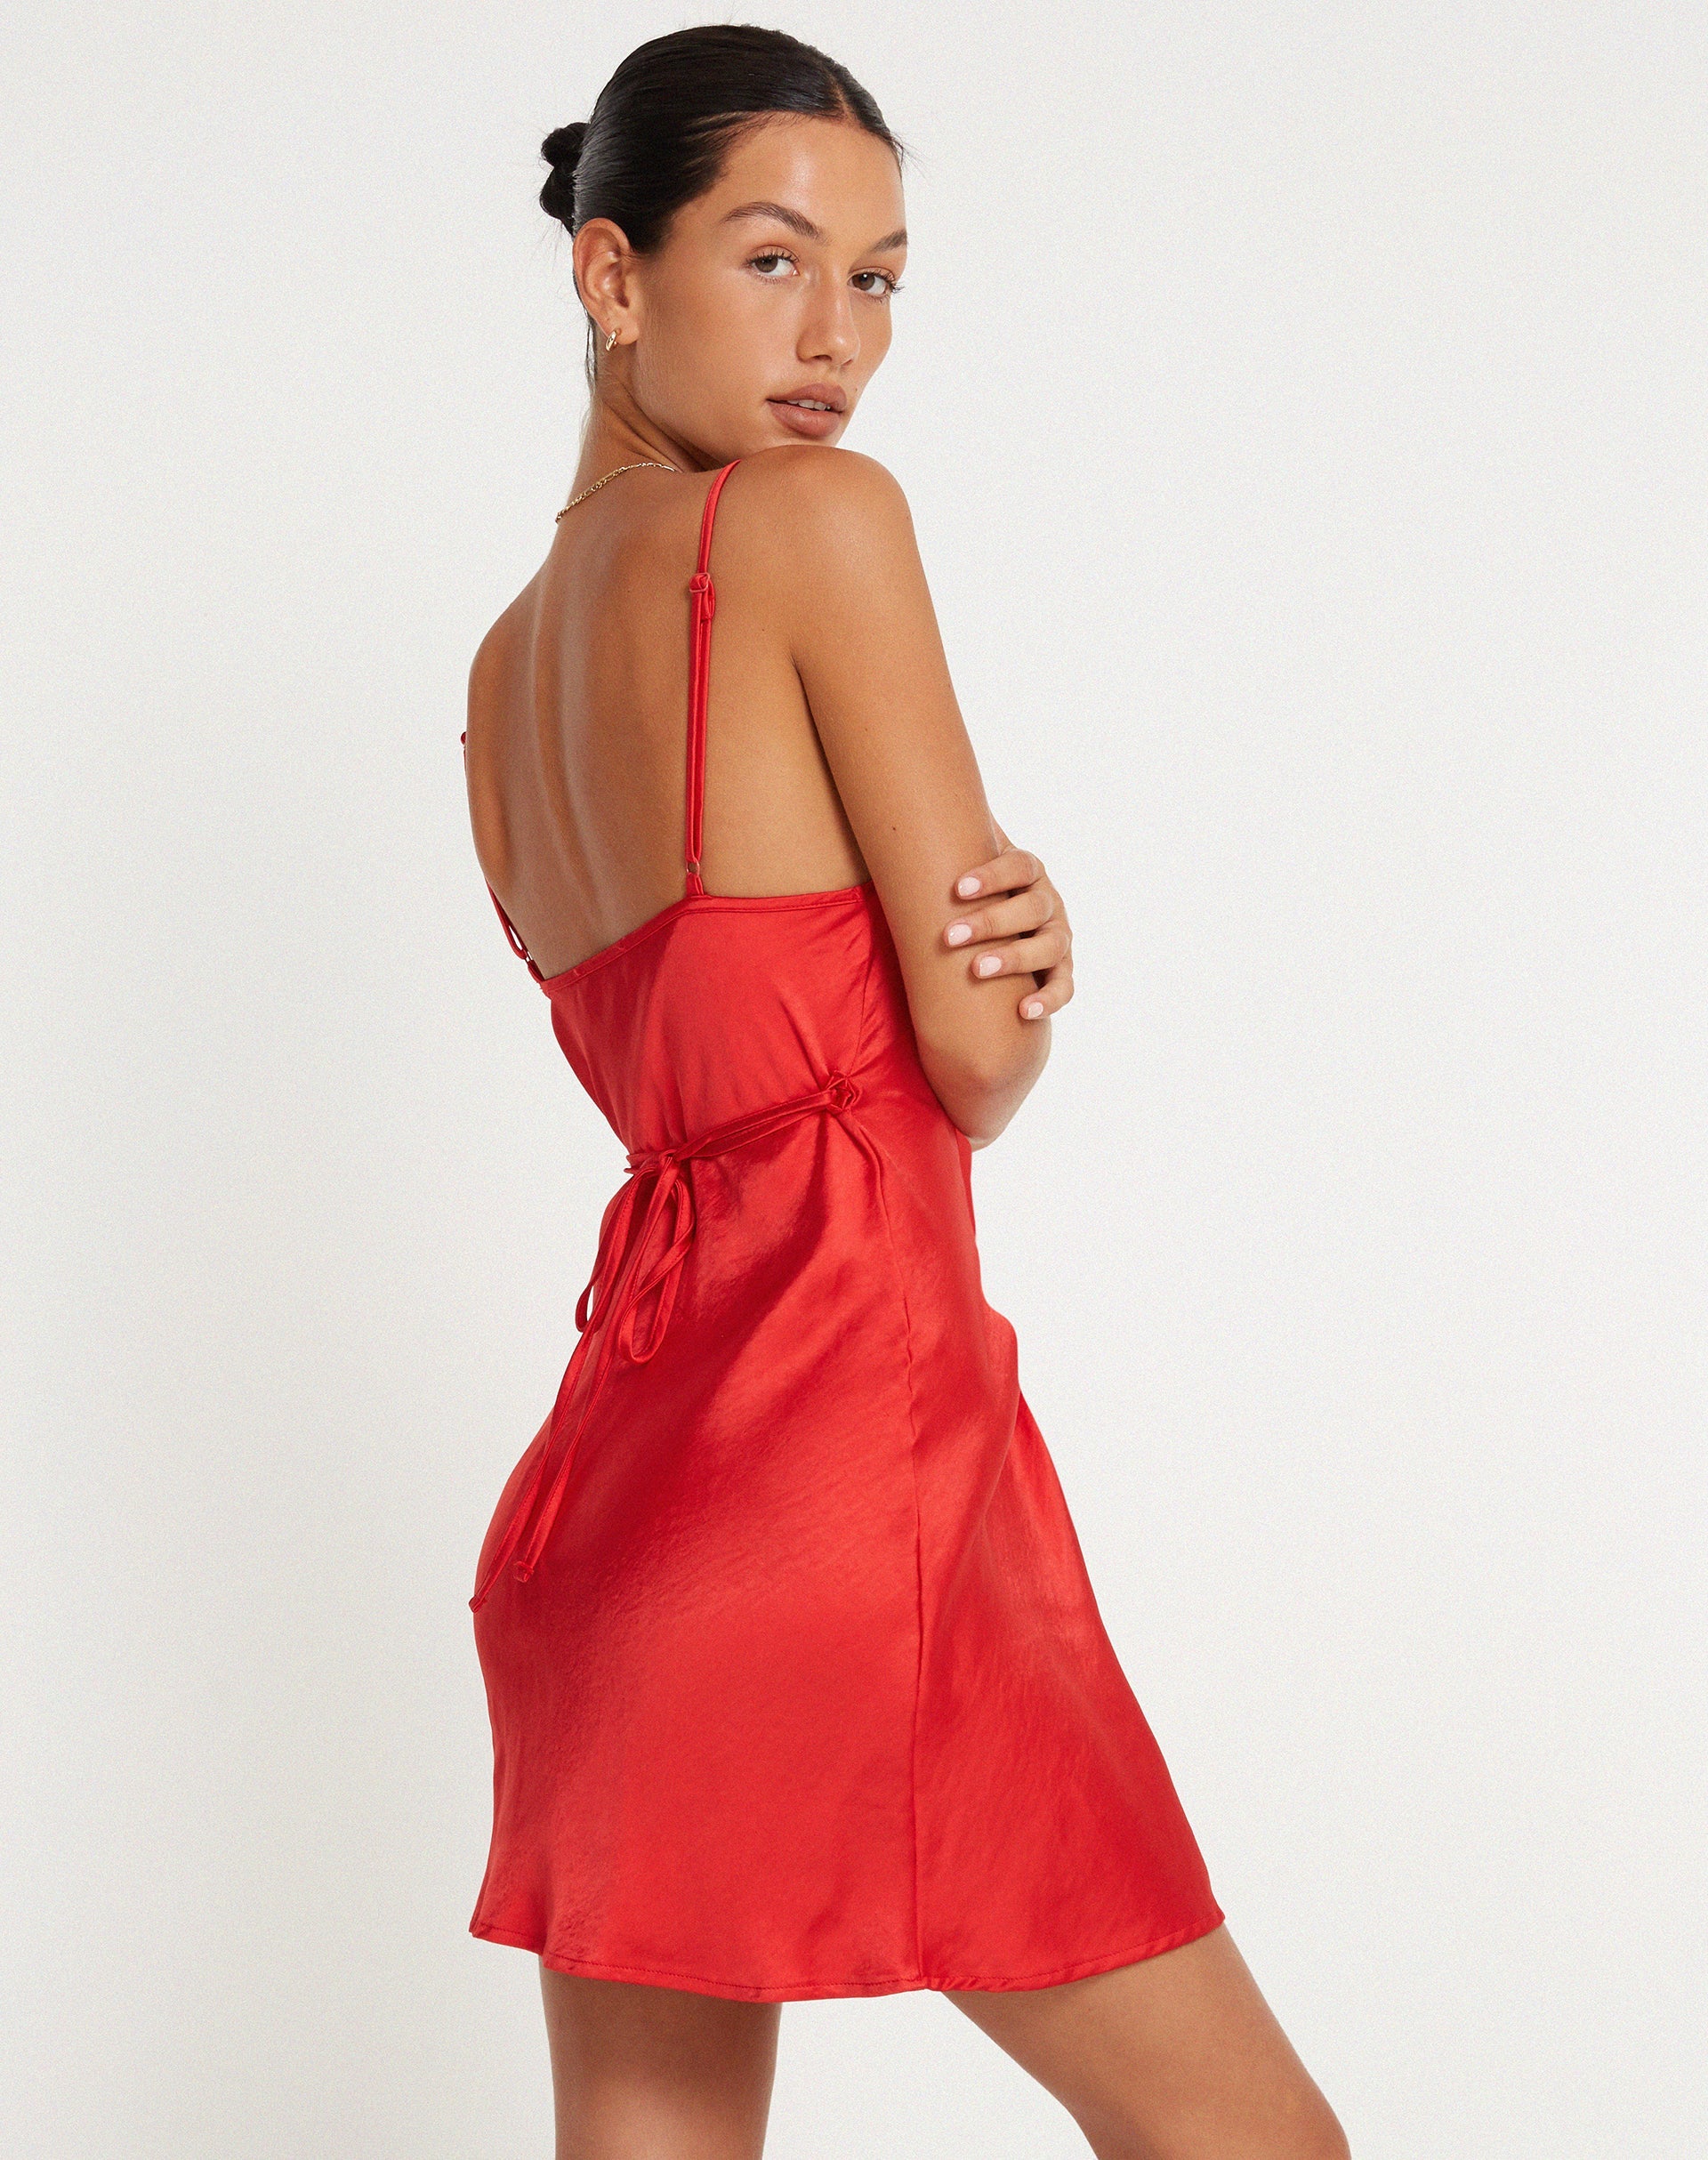 Imagen del vestido Paiva Slip Dress en satén rojo